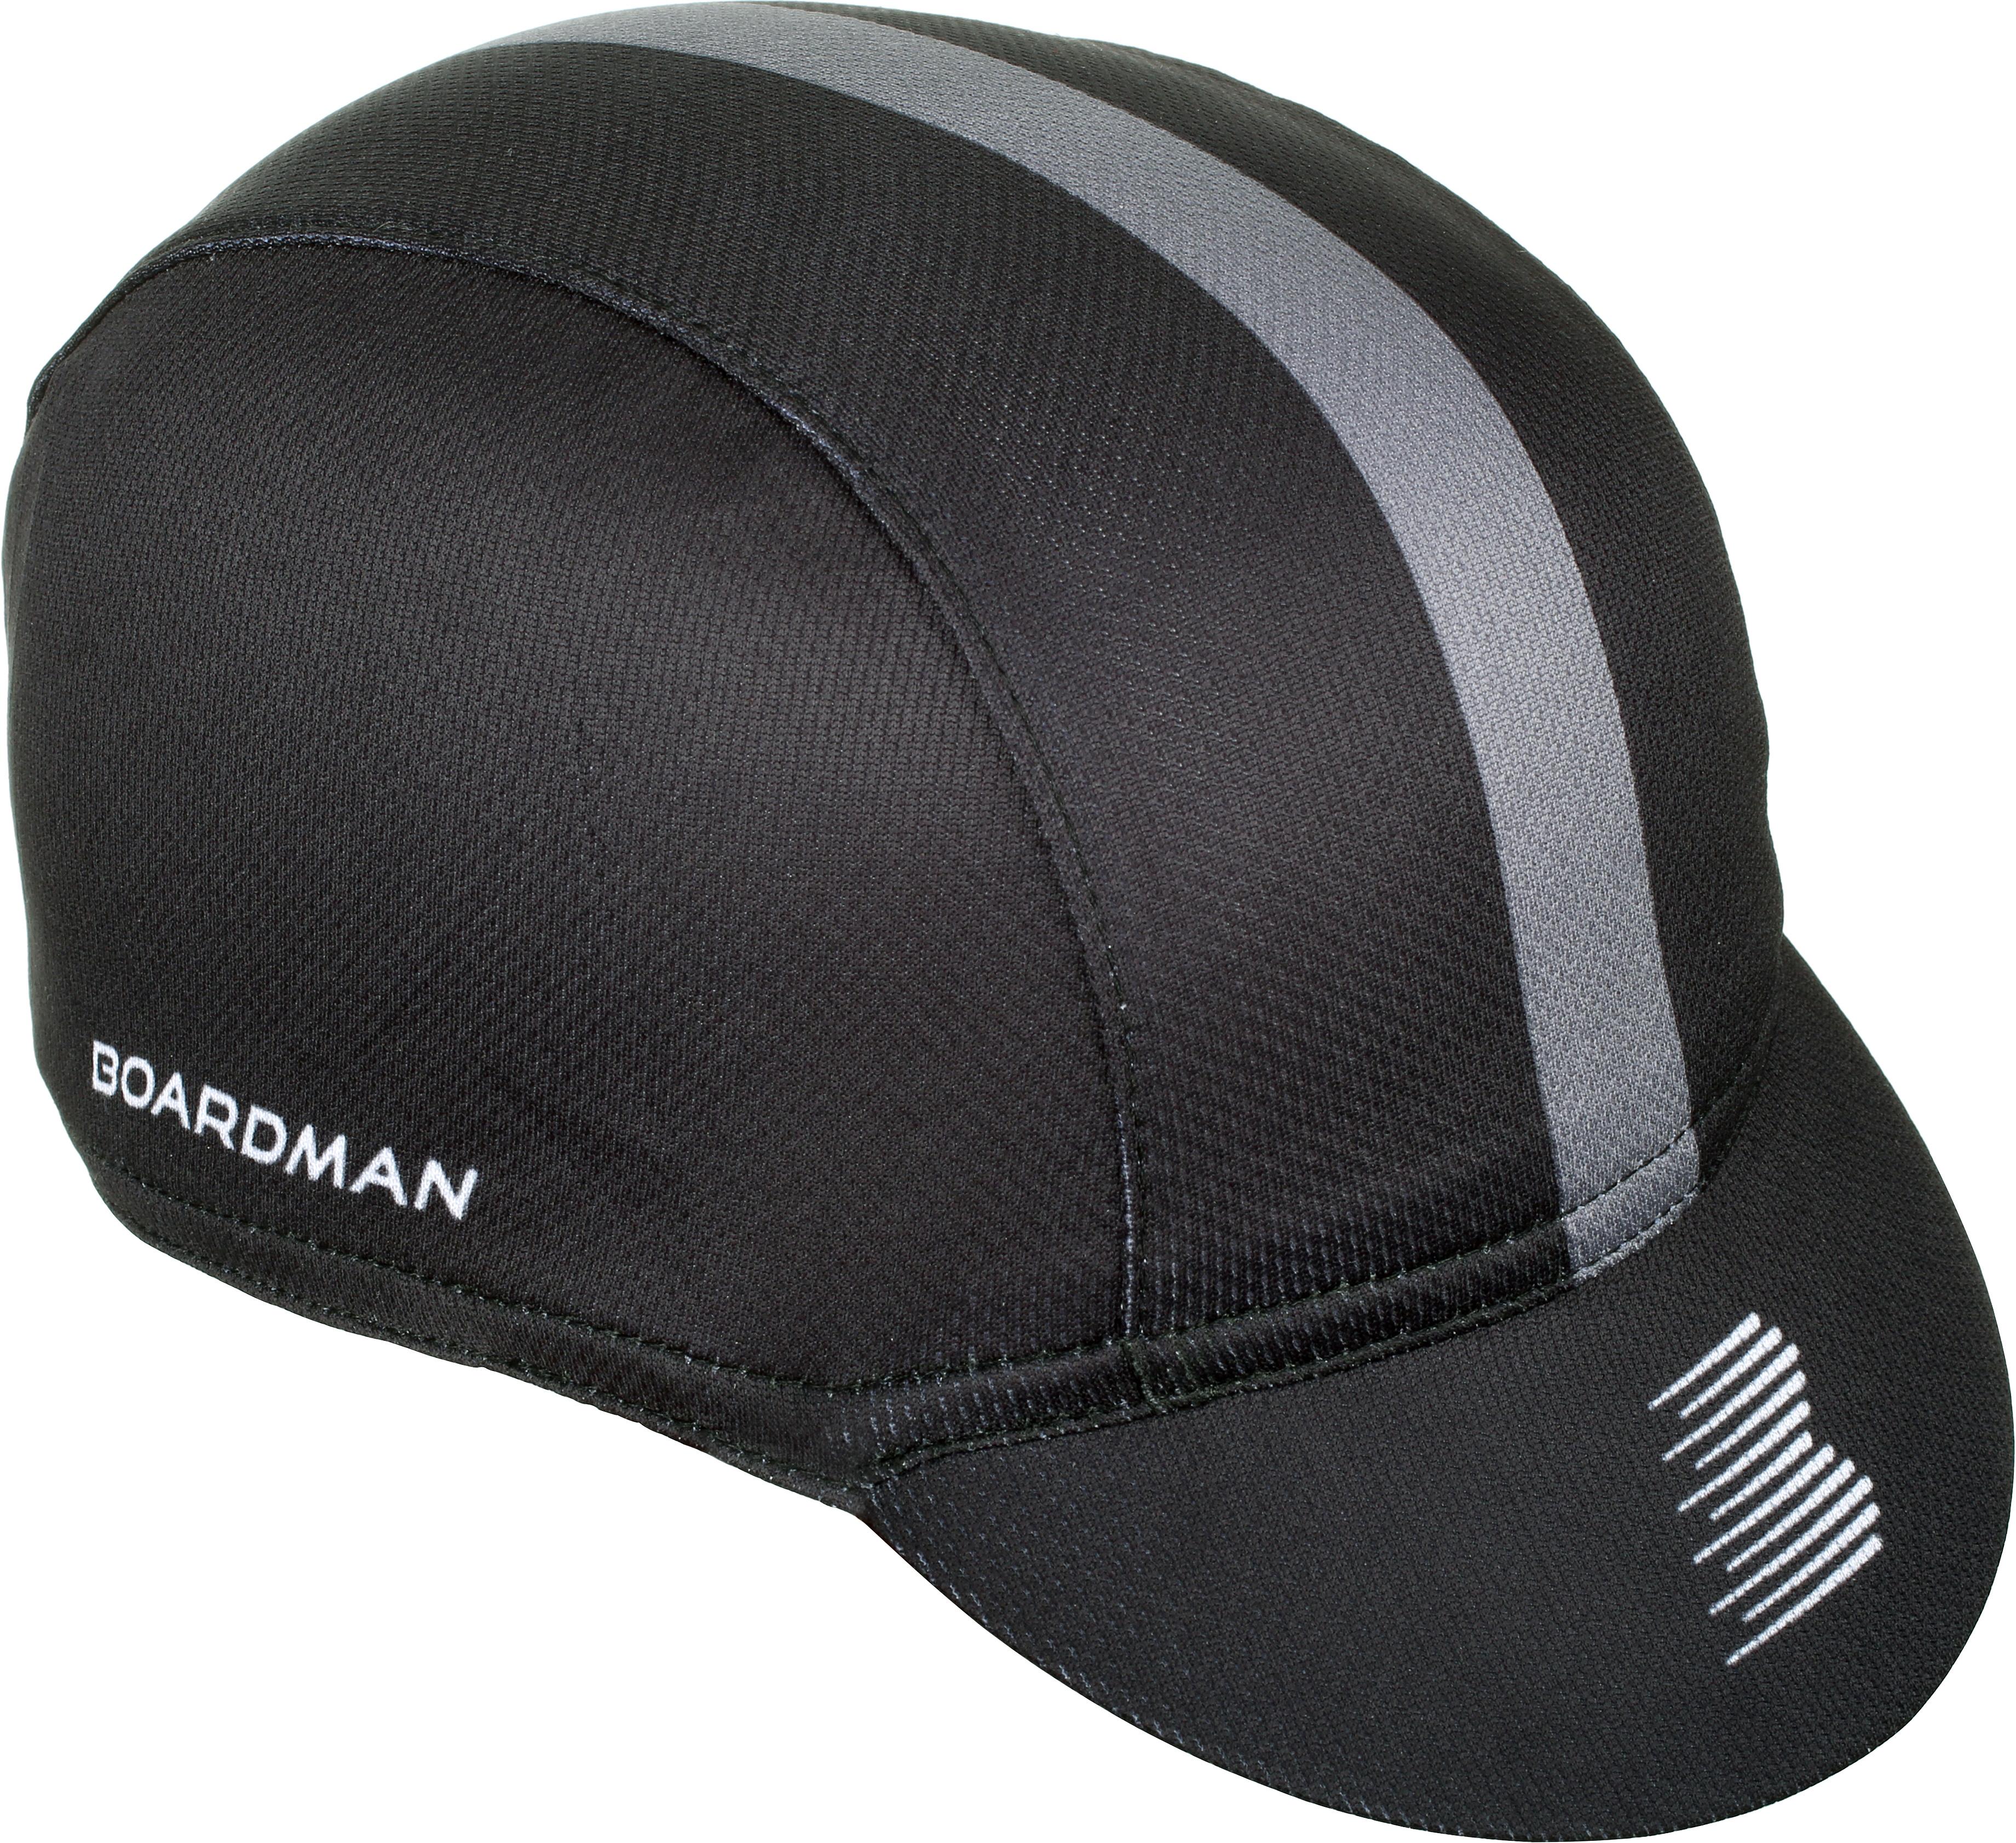 Boardman Cycle Cap Black/Grey